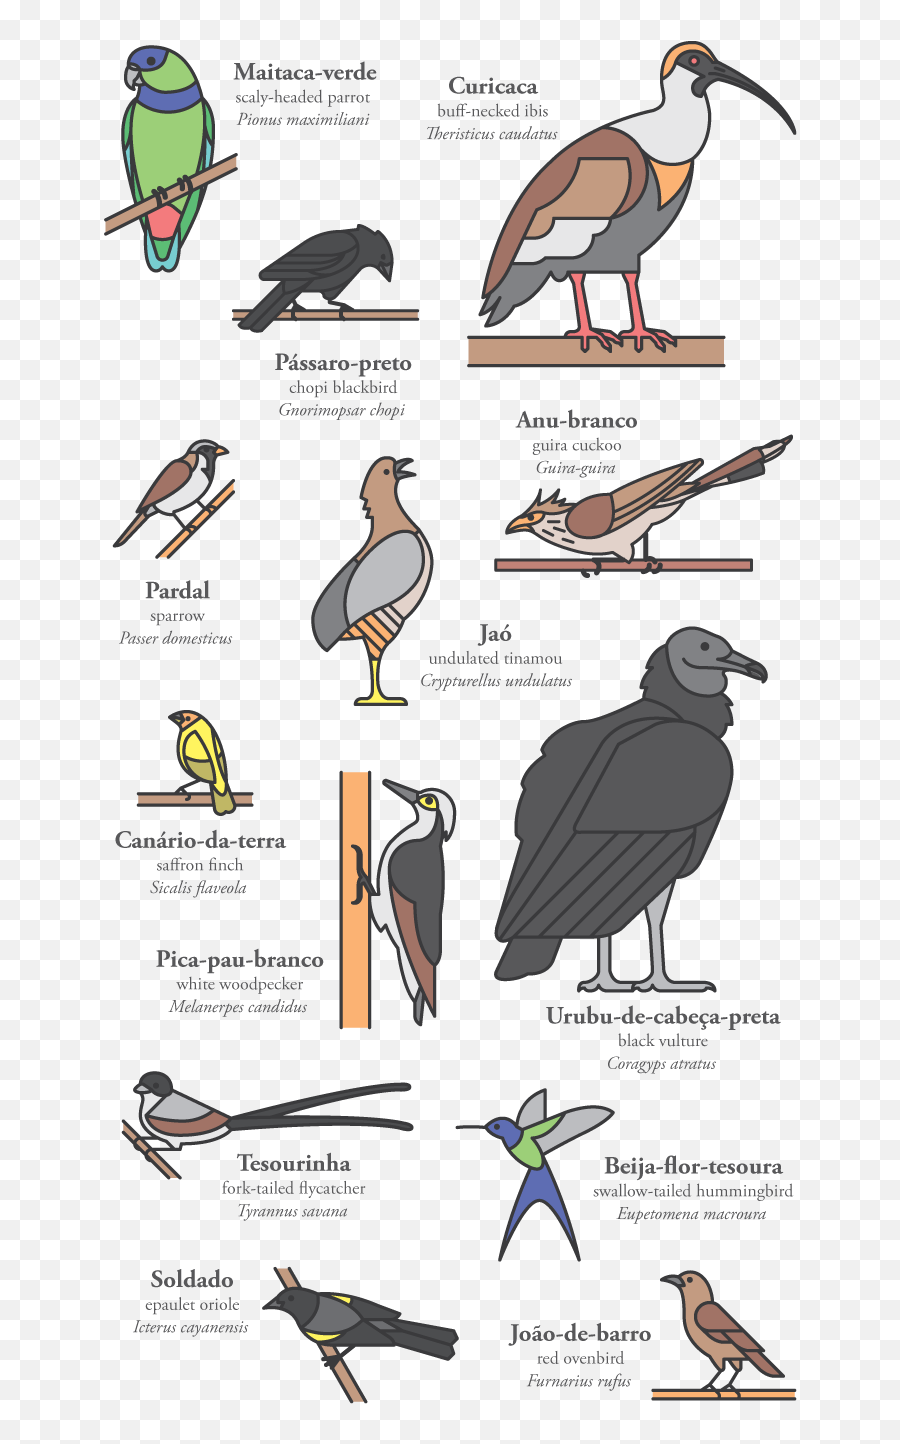 Pedro Machado - Cerrado Birds Ciconiiformes Png,Woodpecker Icon